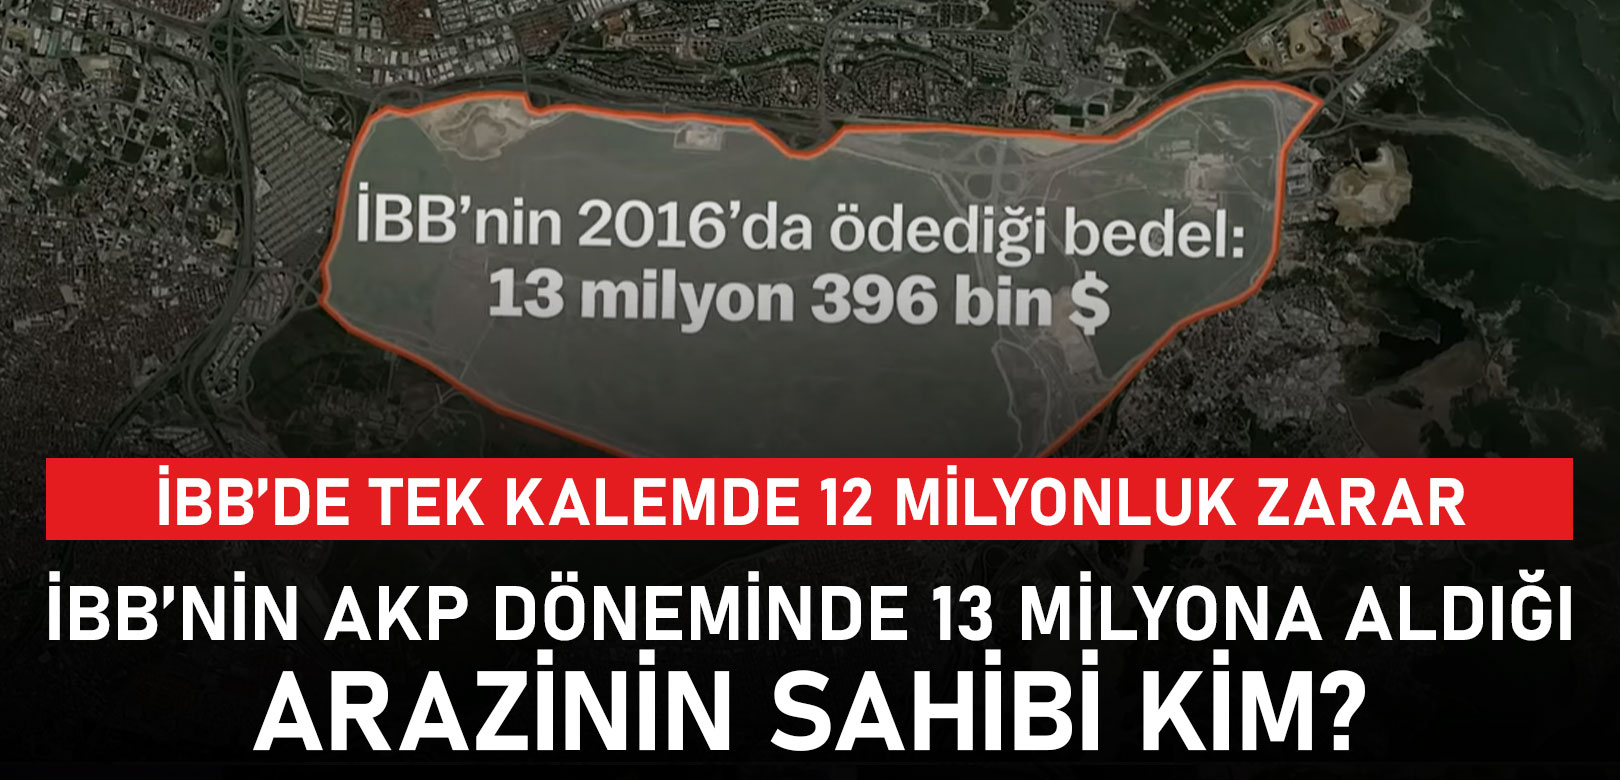 AKP döneminde ⁠İGDAŞ borç batağına sürüklendi, İstanbul’un gazı kesiliyordu